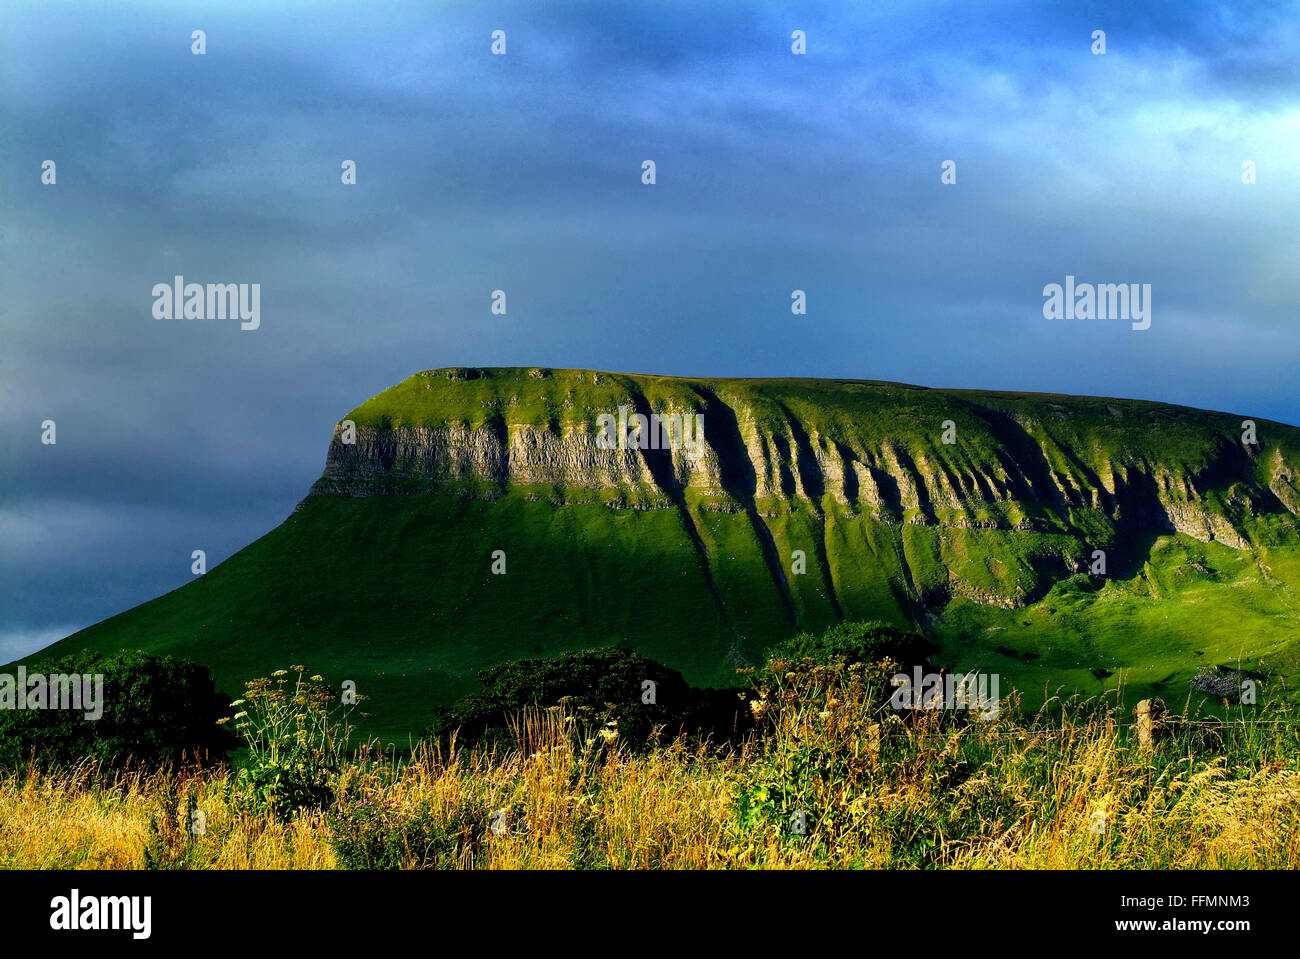 Benbulben, Sligo, rock formation, l'âge de glace, glacier, calcaire, schiste, paysage, pittoresque, l'Irlande, l'Irish, campagne, natur Banque D'Images